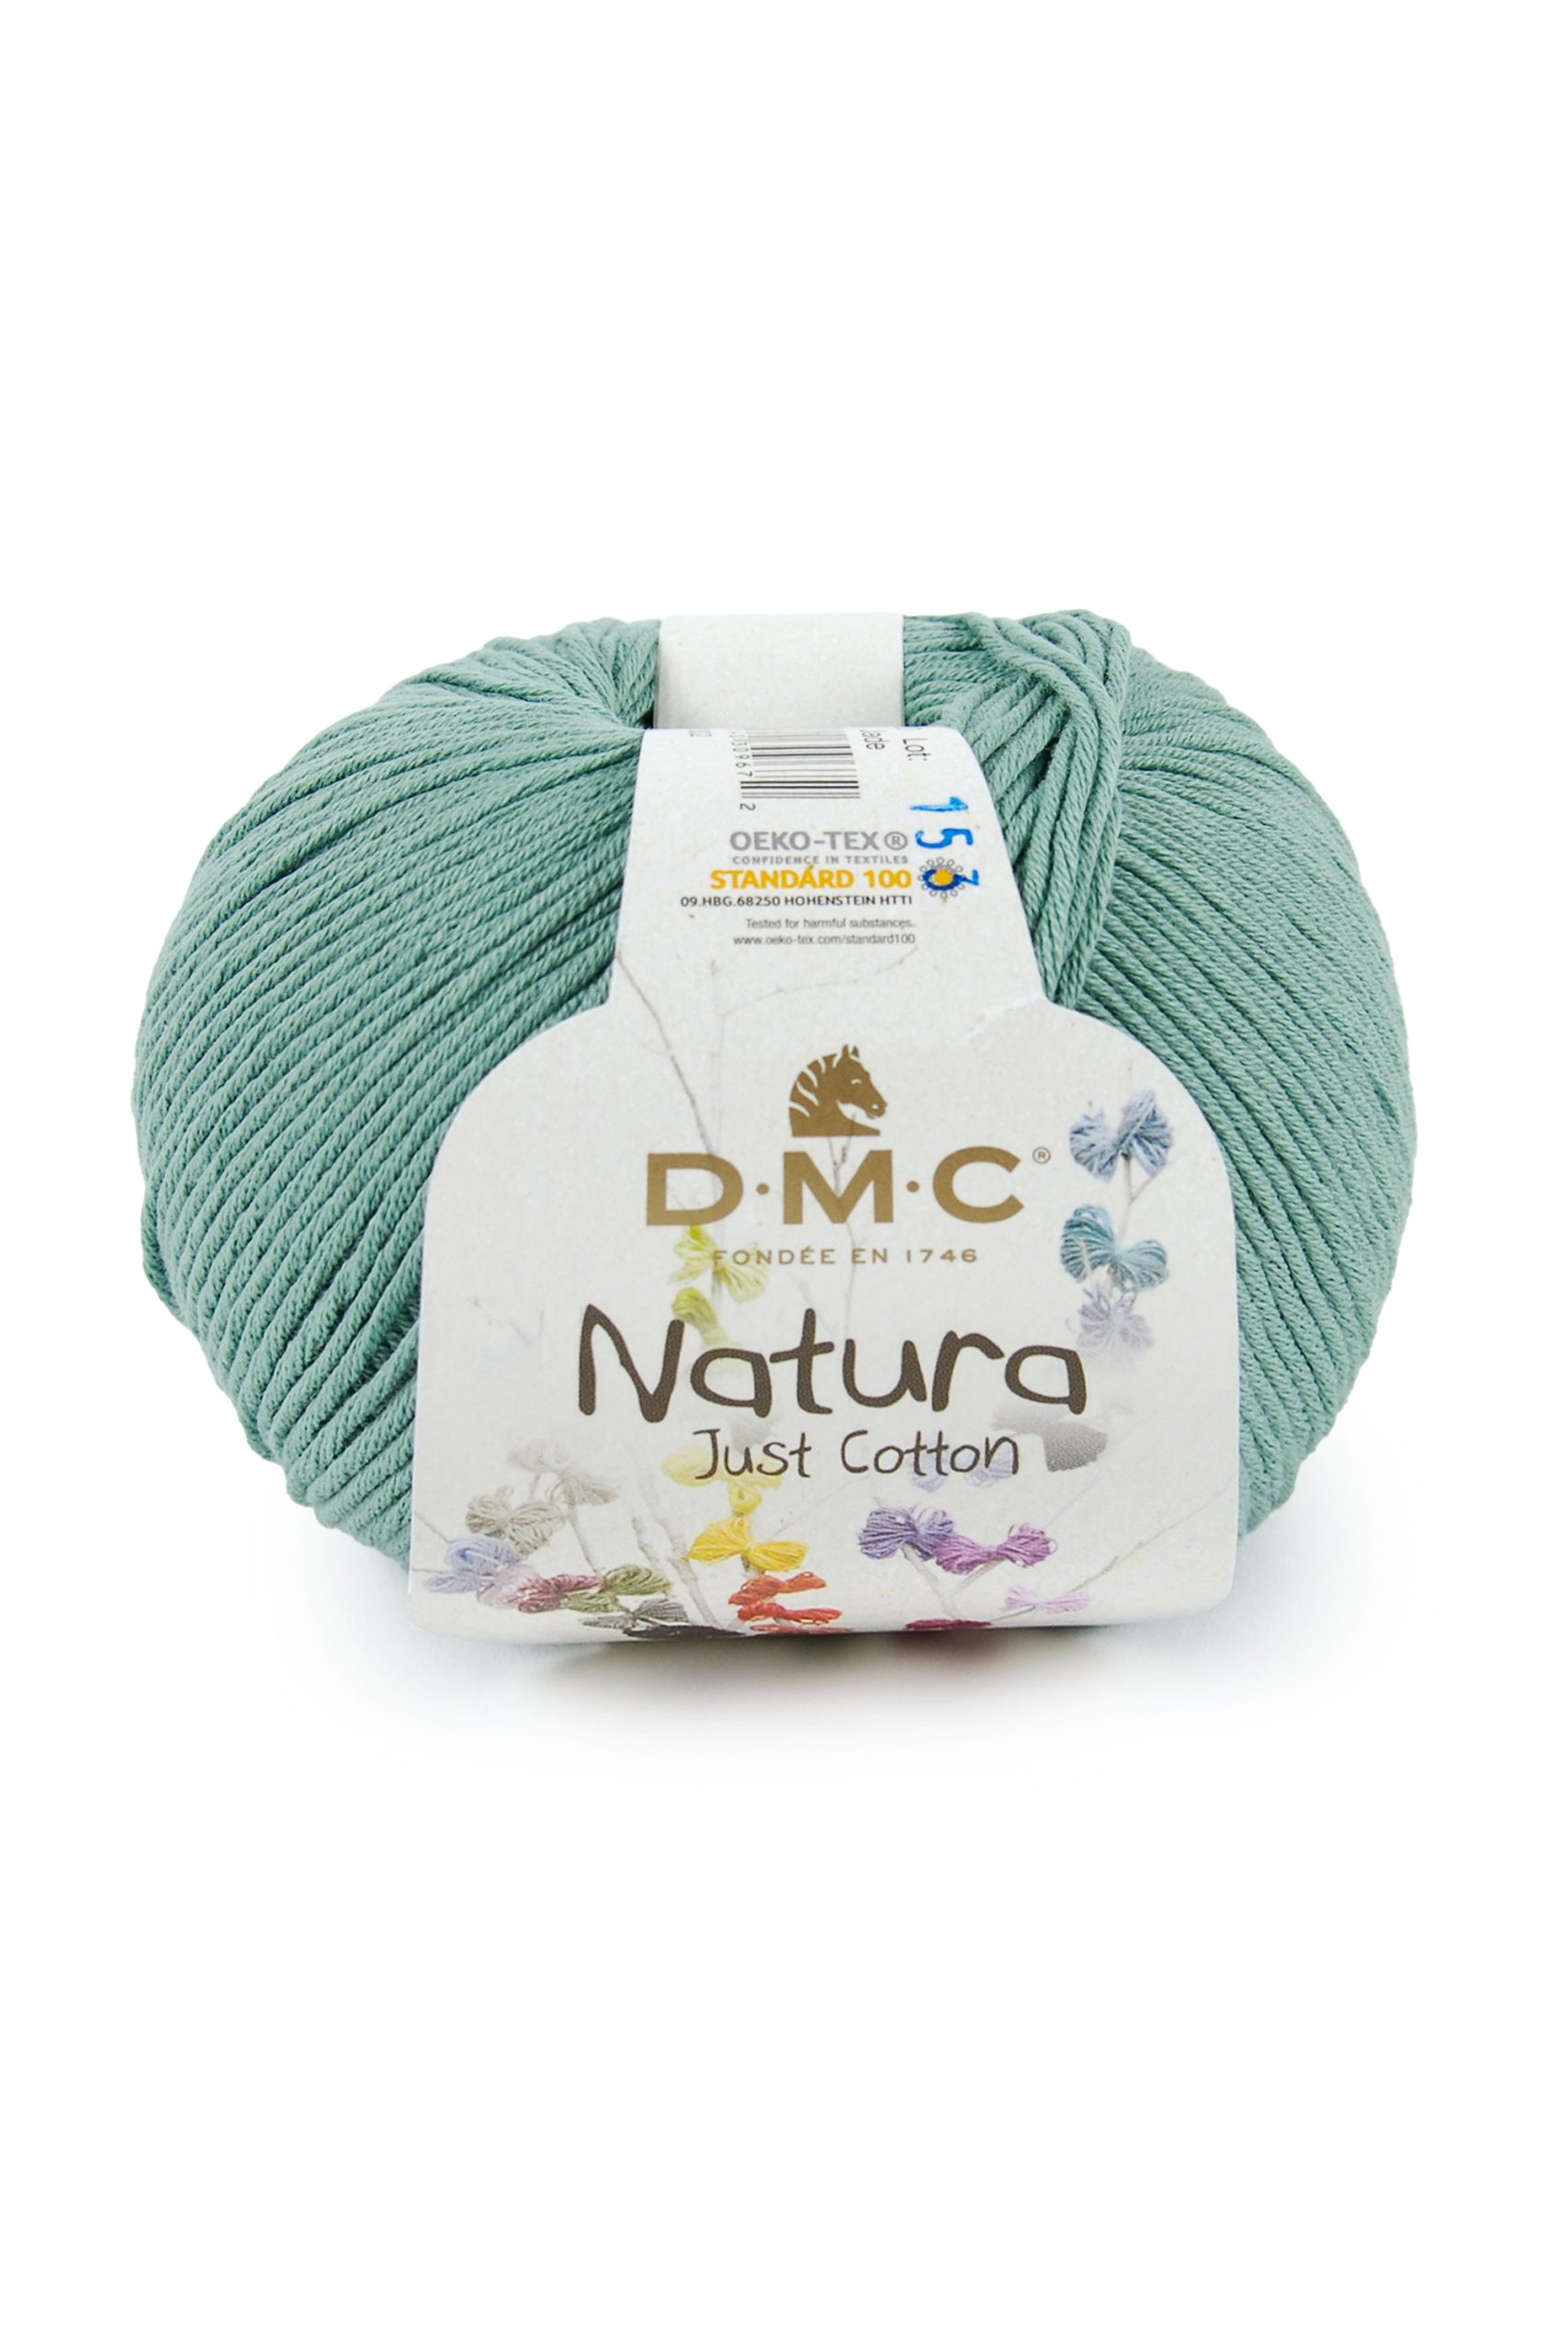 Cotone Dmc Natura Just Cotton Colore N20